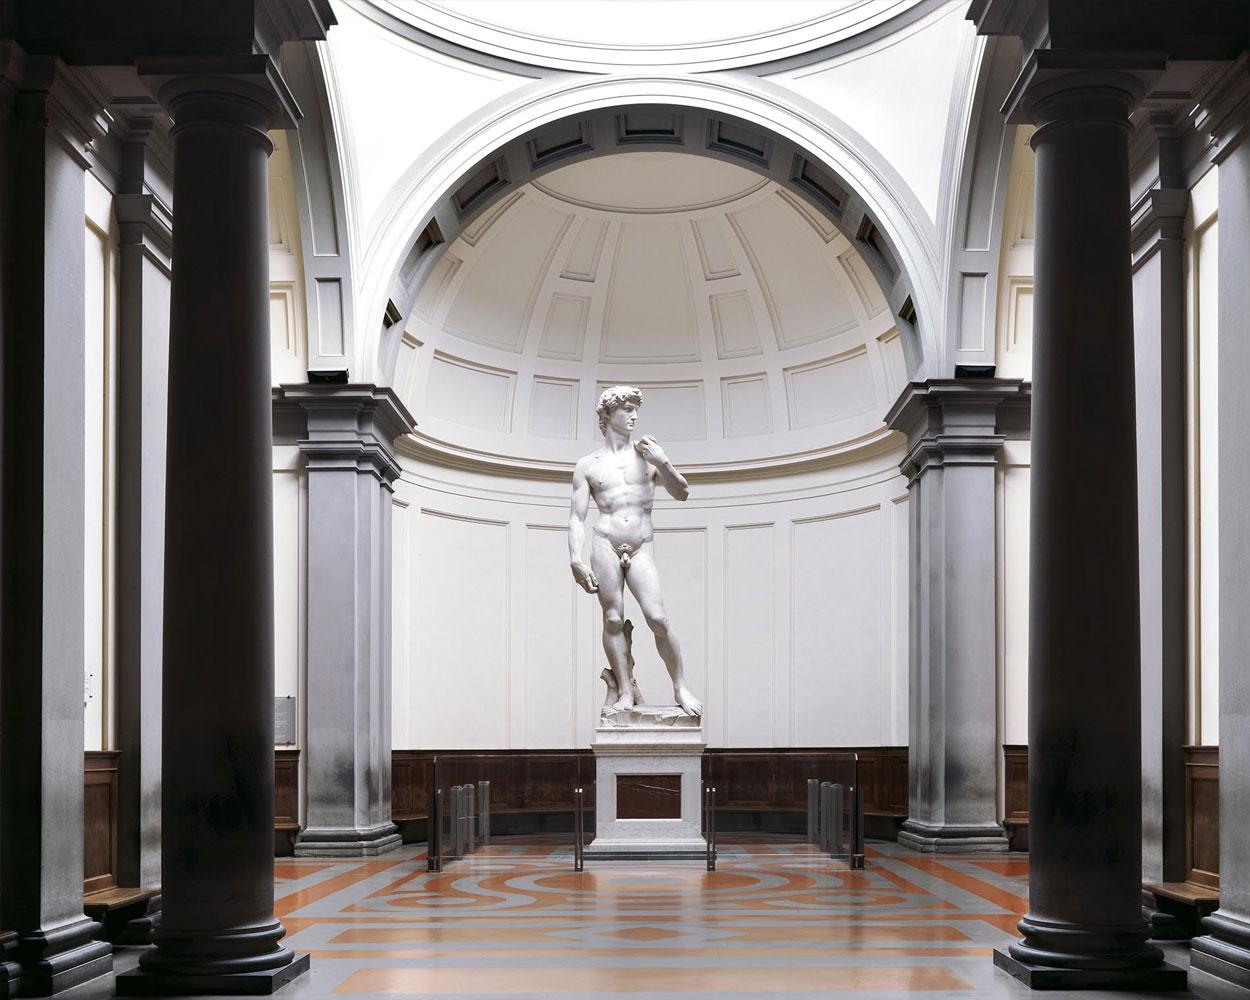 Gallleria della Accademia, Florence, Italy by Massimo Listri